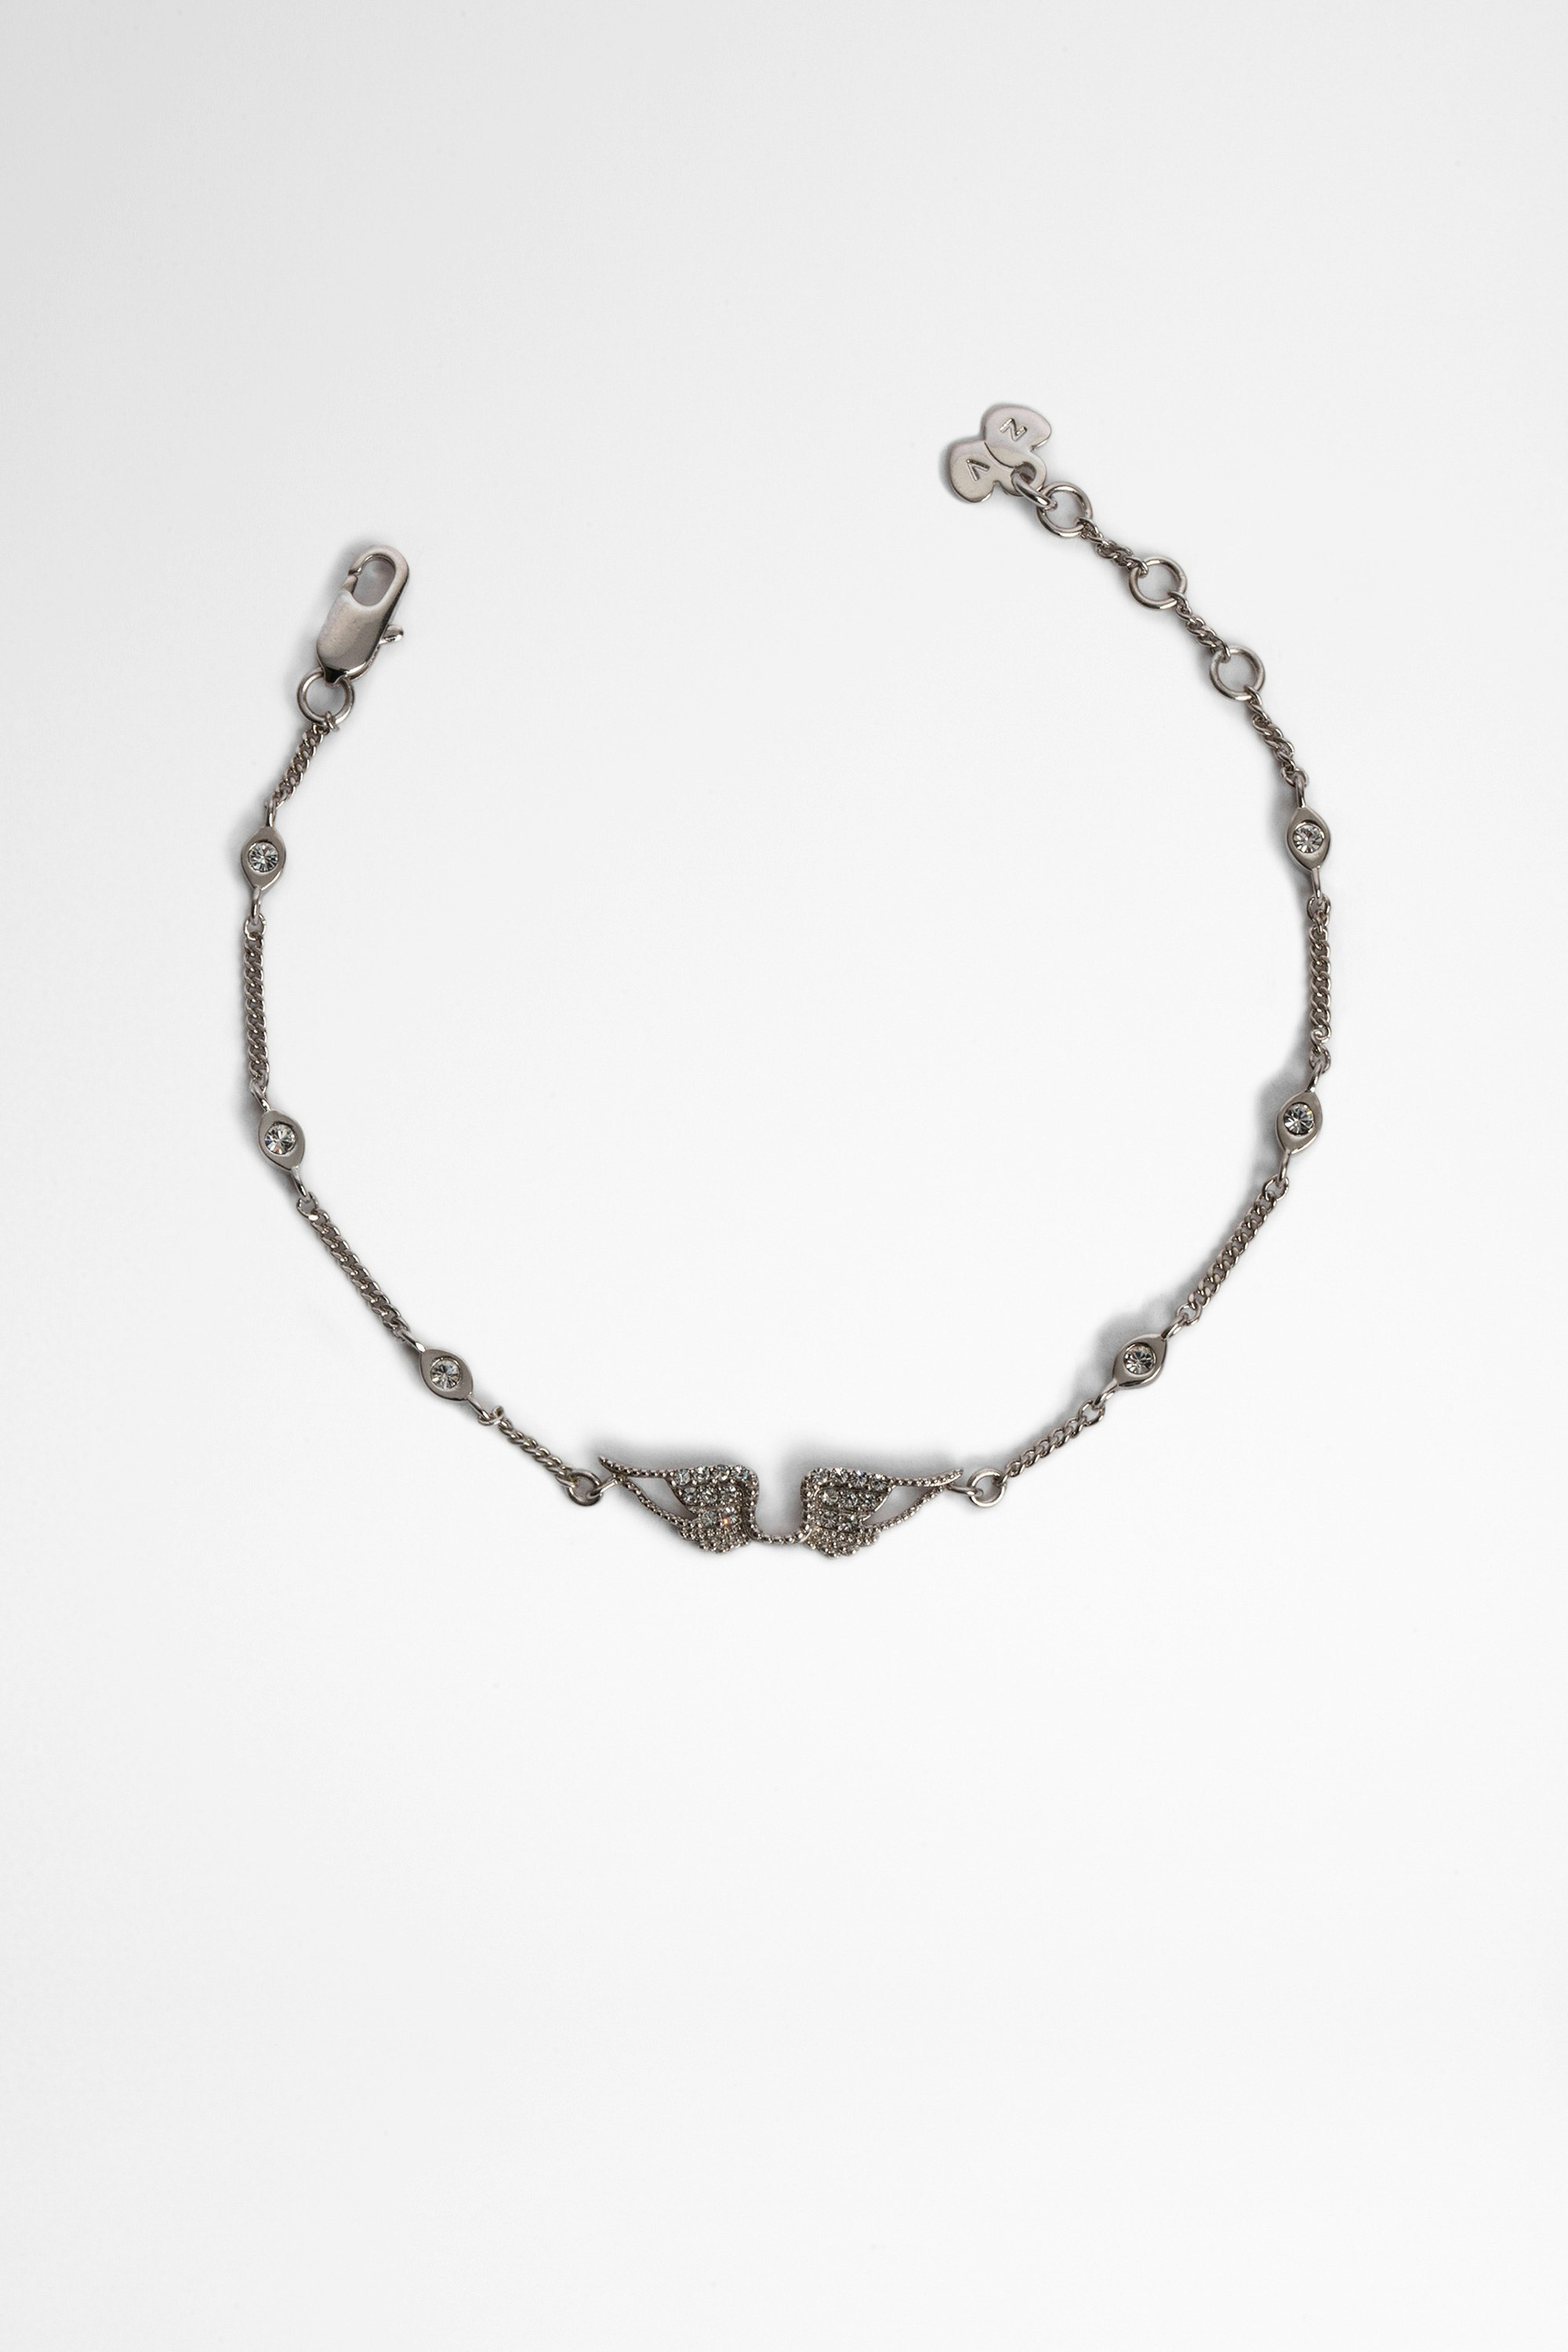 Rock Bracelet  Women's brass and rhinestone chain bracelet with wings